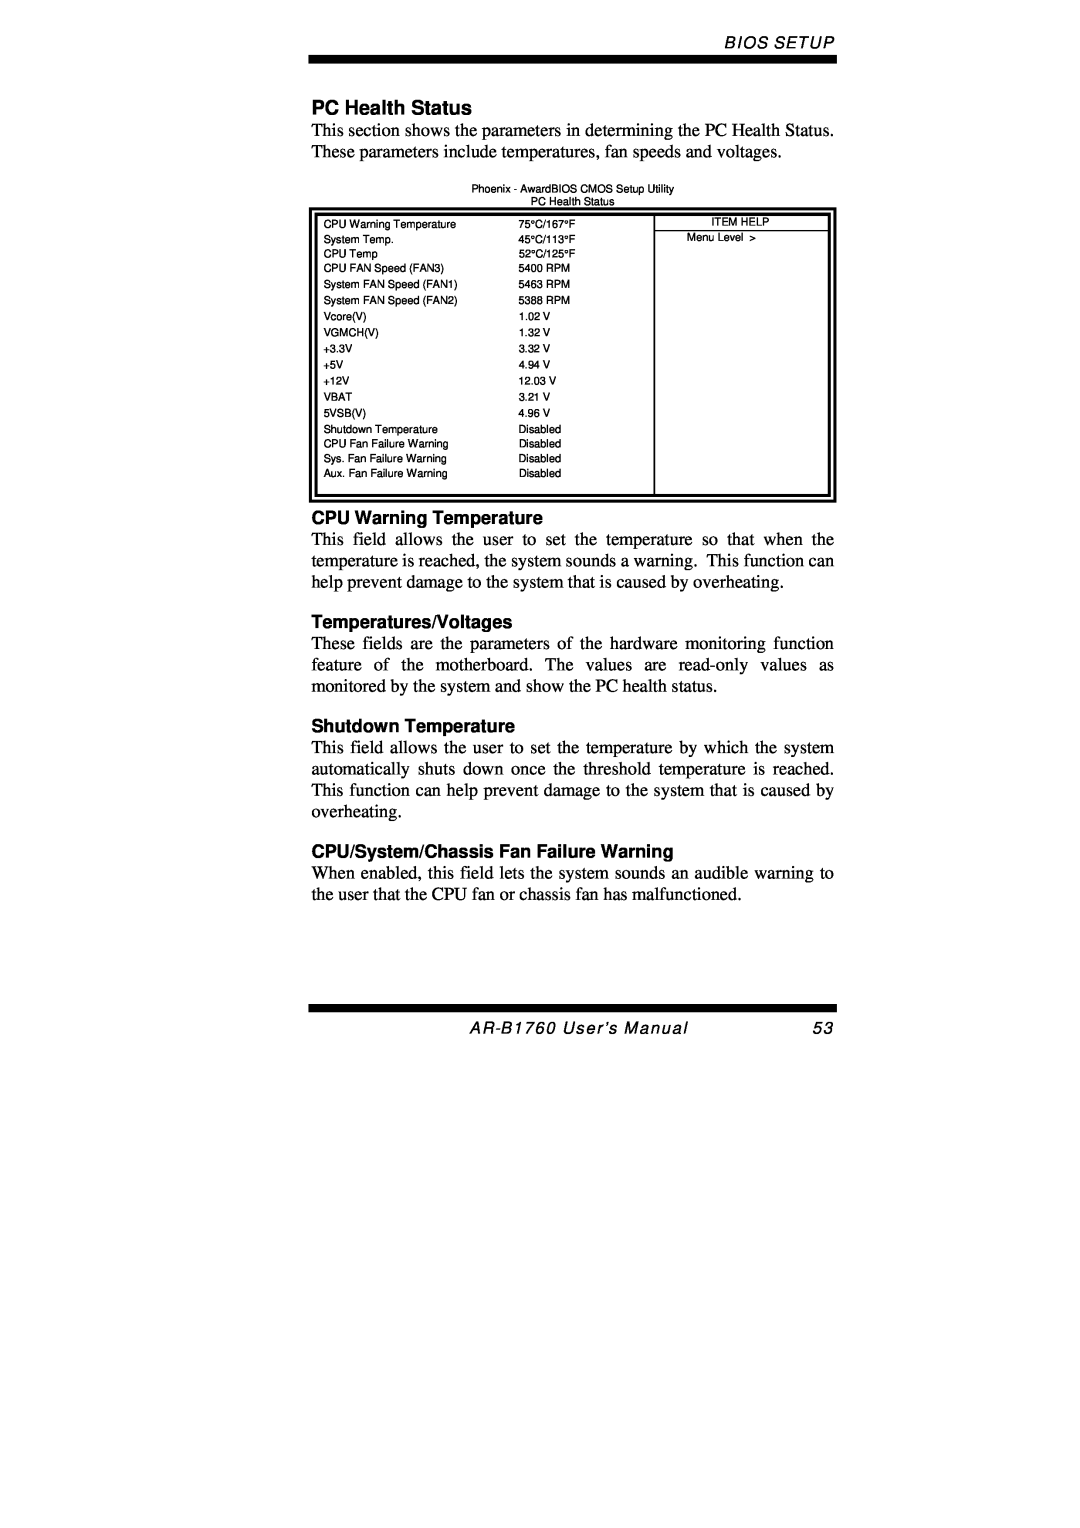 Intel AR-B1760 user manual PC Health Status, CPU Warning Temperature, Temperatures/Voltages, Shutdown Temperature 